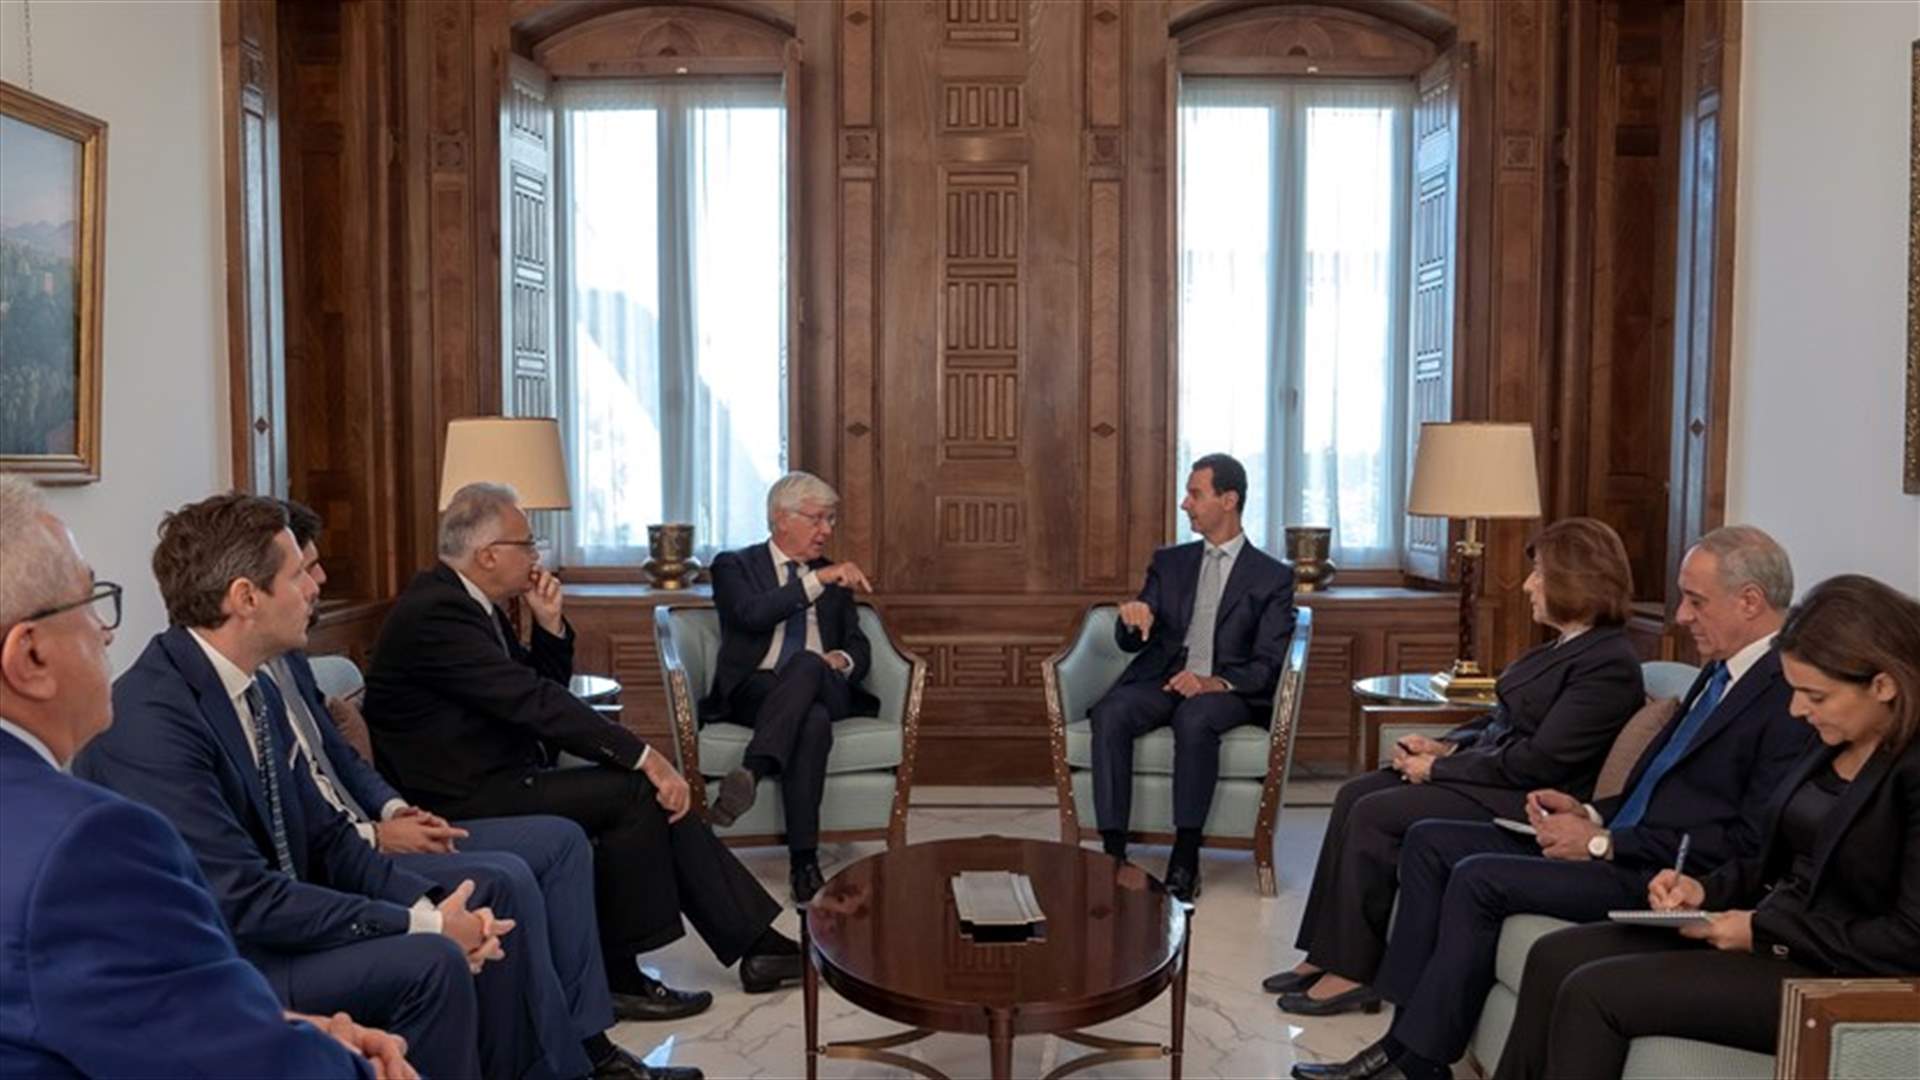 الأسد التقى وفداً إيطالياً: موقف معظم الدول الأوروبية حول ما جرى في سوريا لم يكن ذا صلة بالواقع منذ البداية